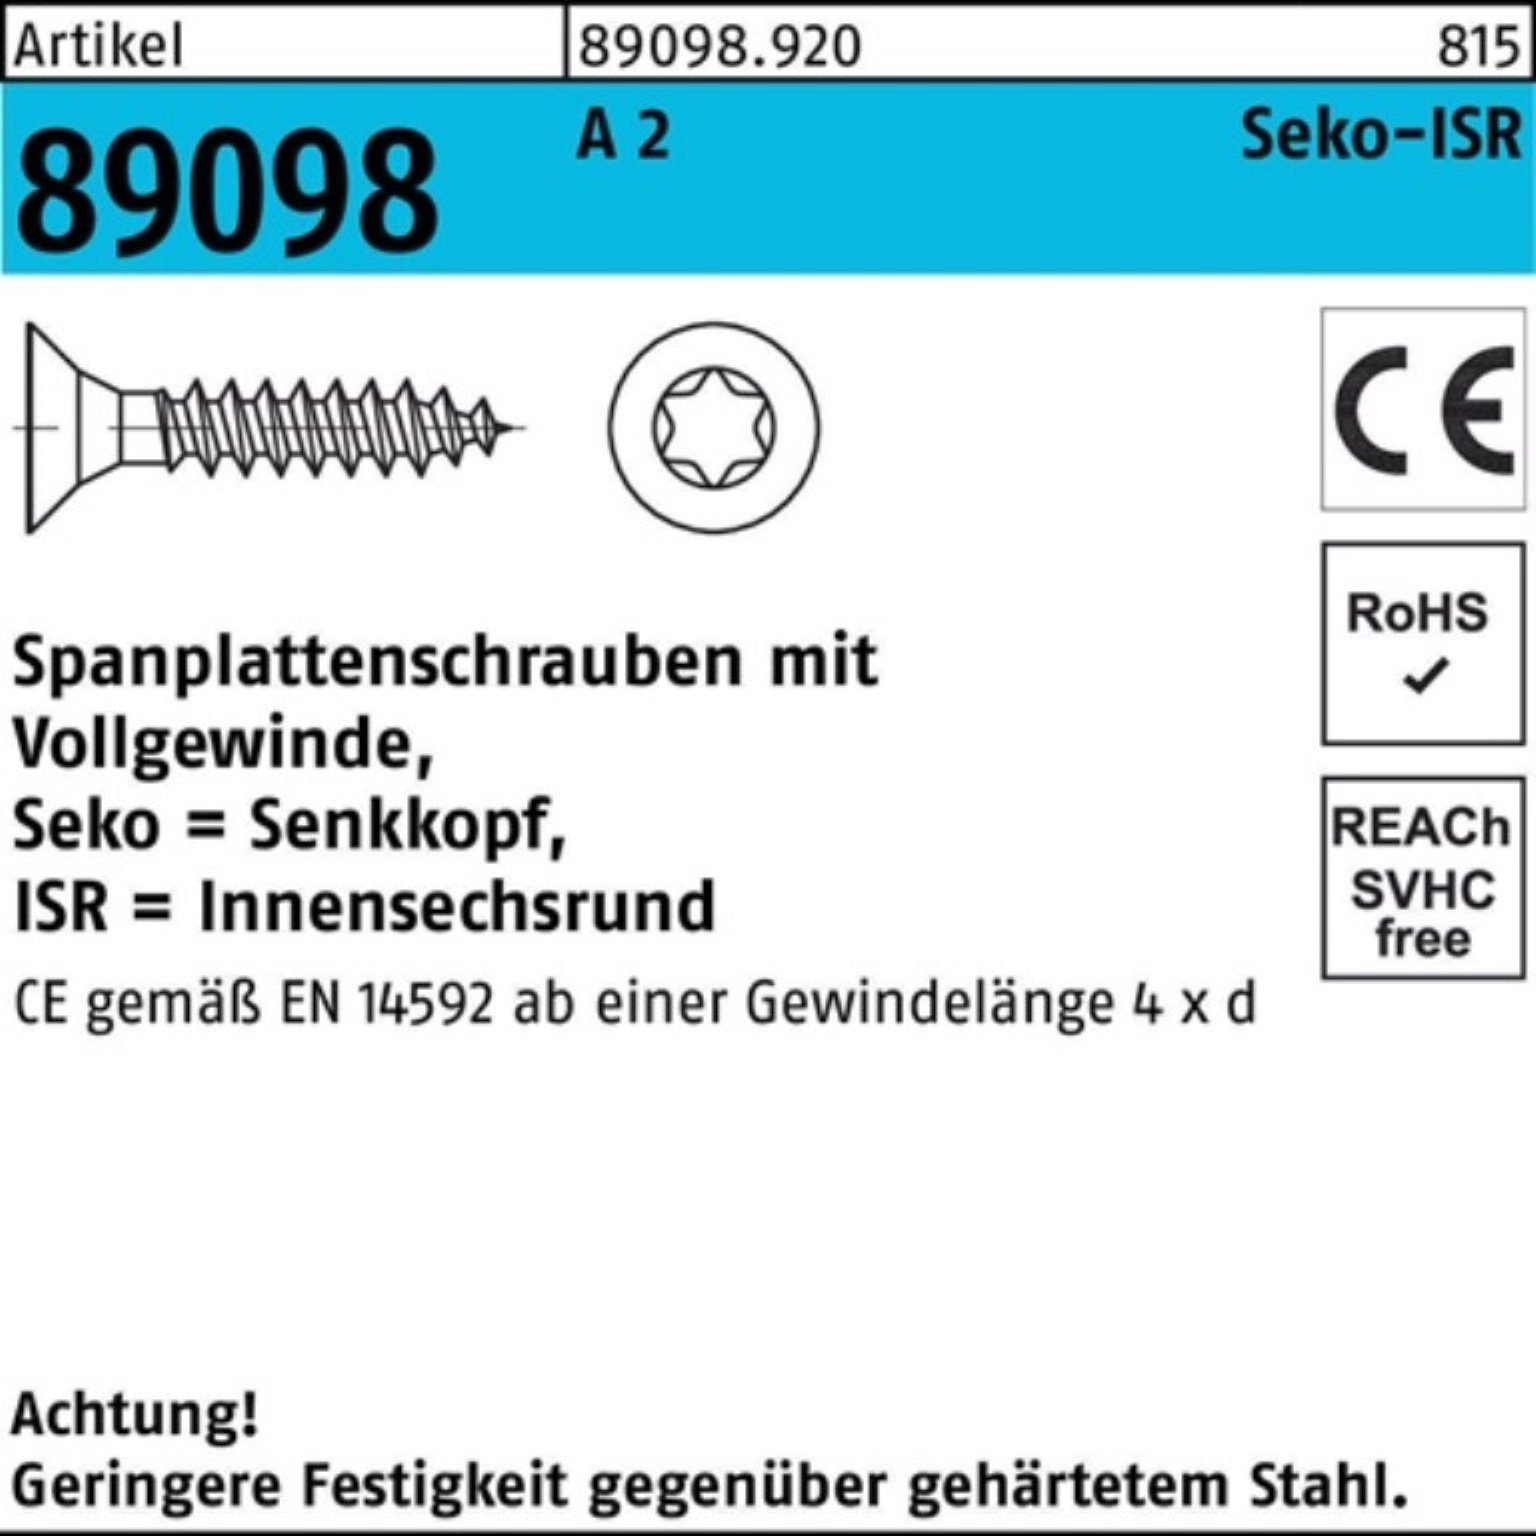 Reyher Spanplattenschraube 1000er Pack Spanplattenschraube R 89098 SEKO ISR VG 3,5x 25-T10 A 2 10